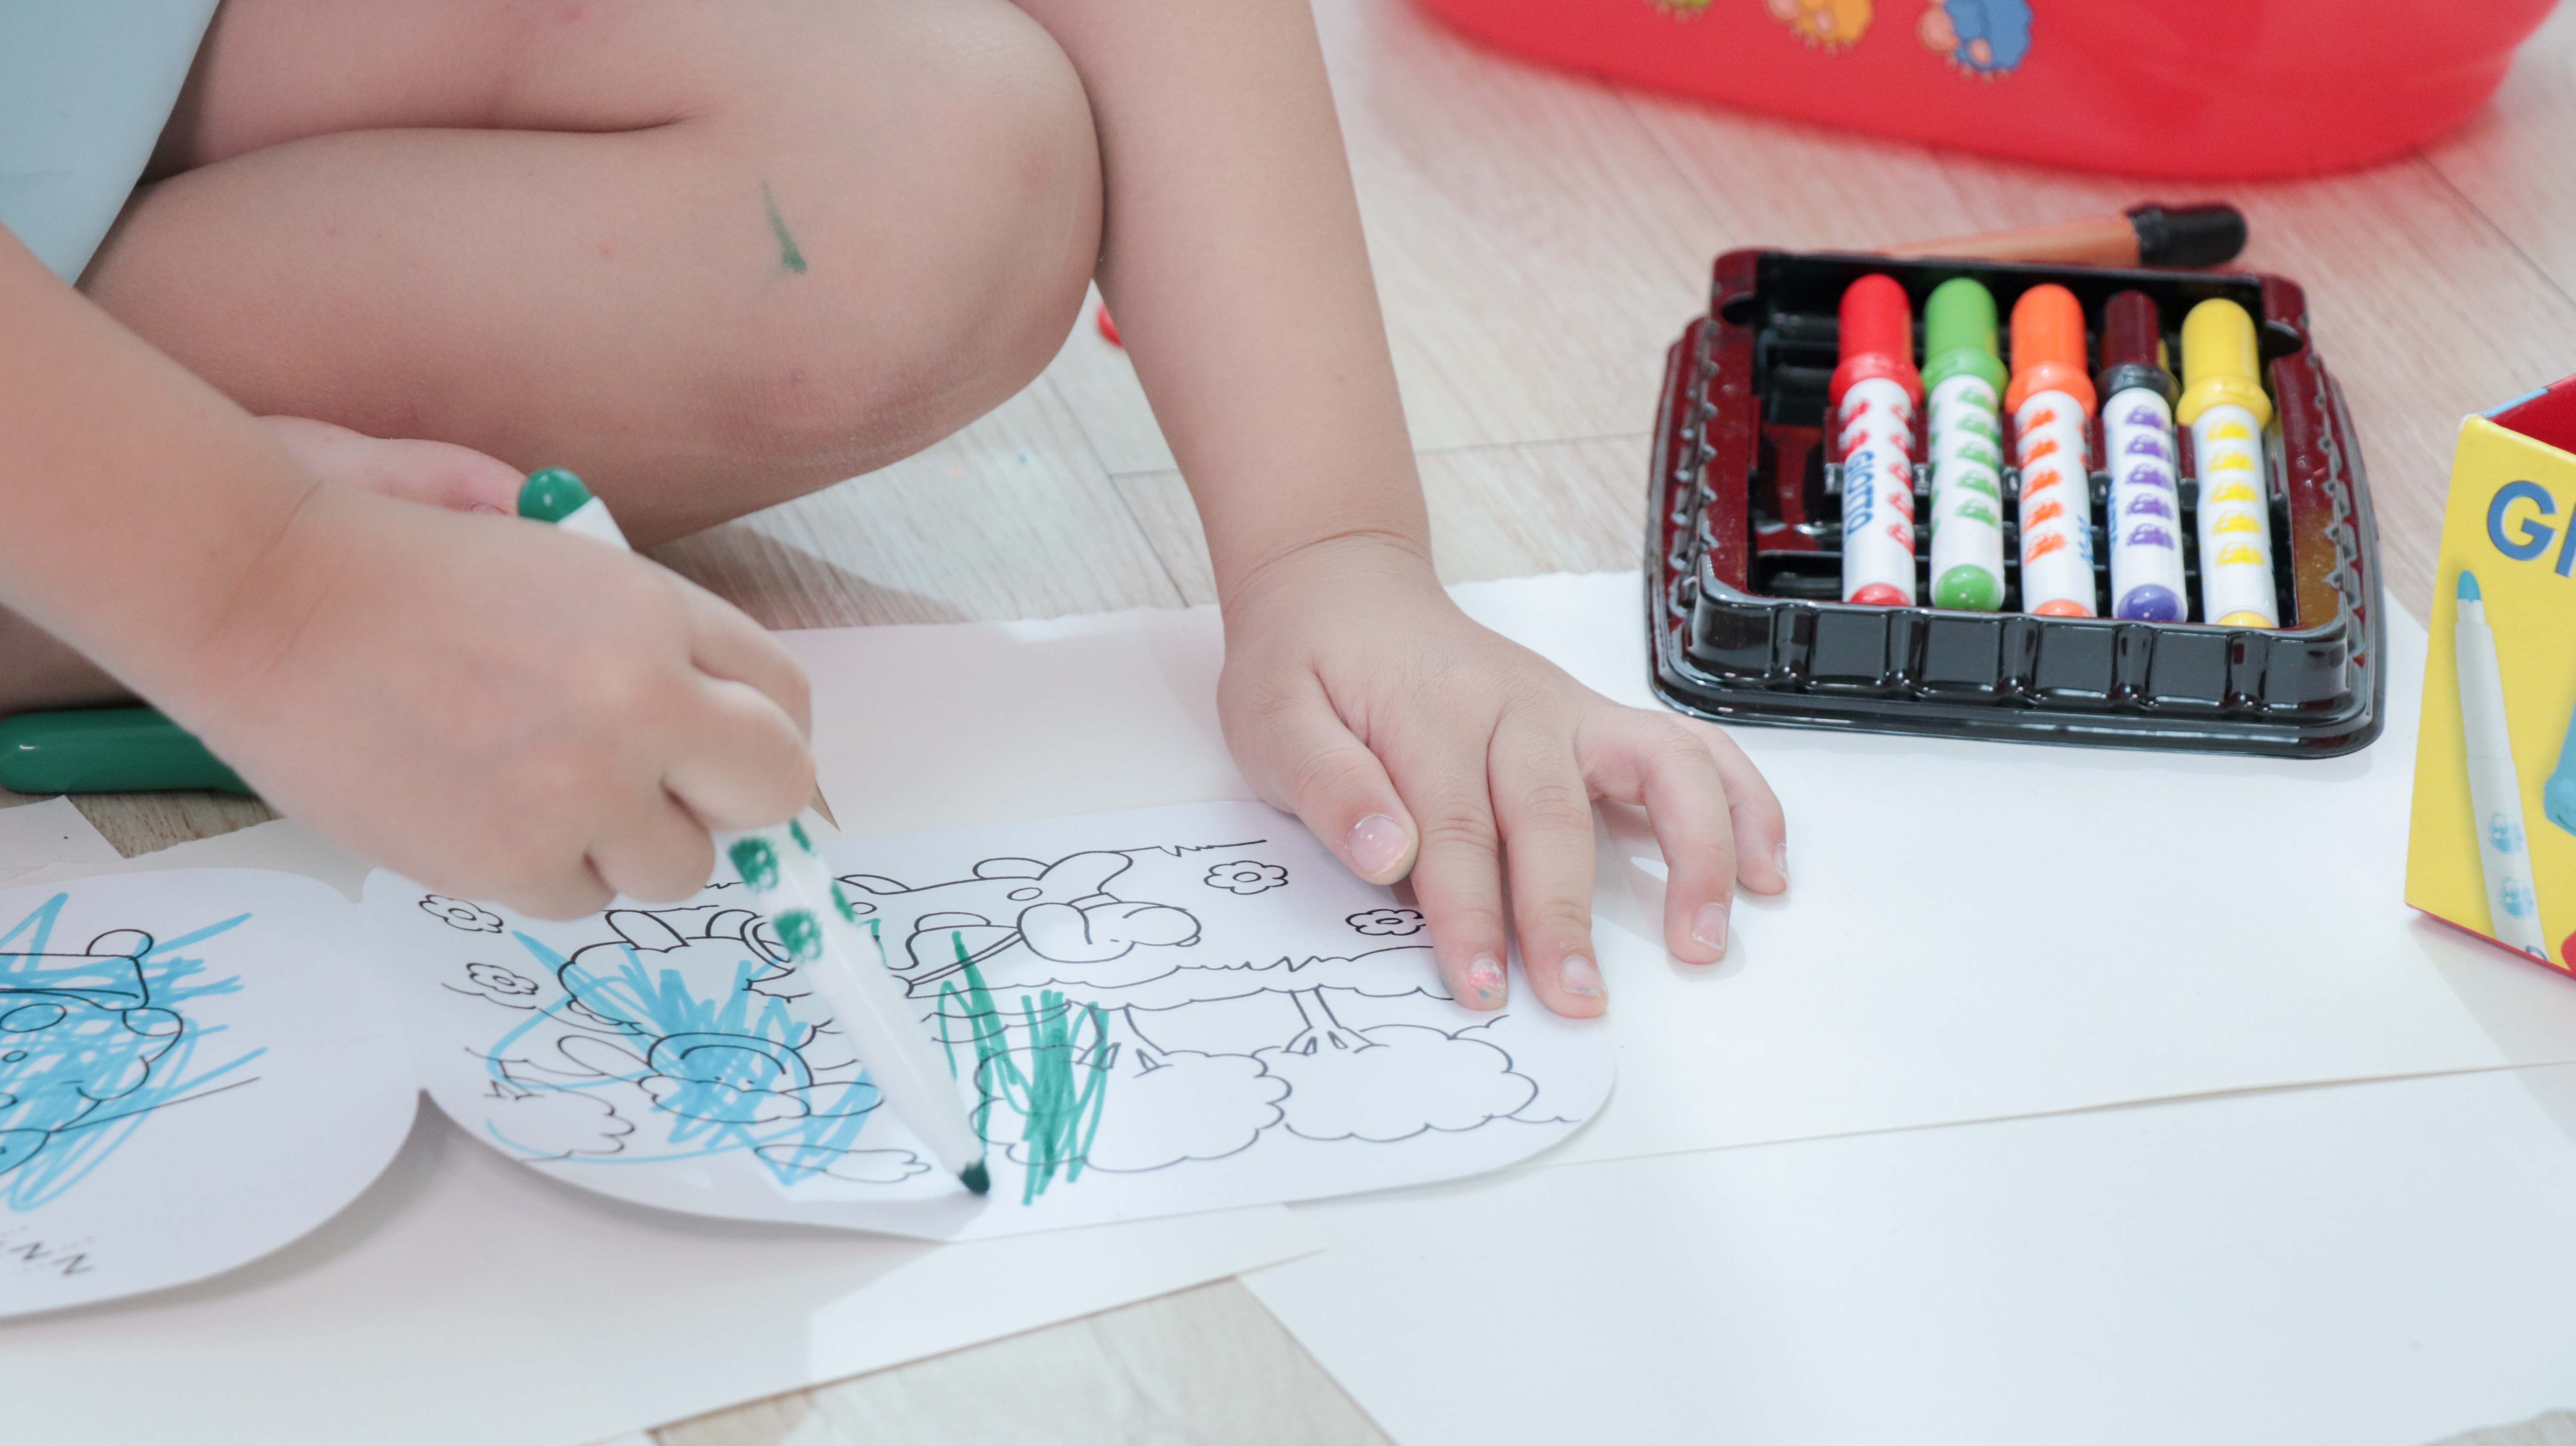 【從繪畫開始了解孩子｜義大利GIOTTO bebe全系列：可洗式無毒蠟筆、彩色筆、黏土】